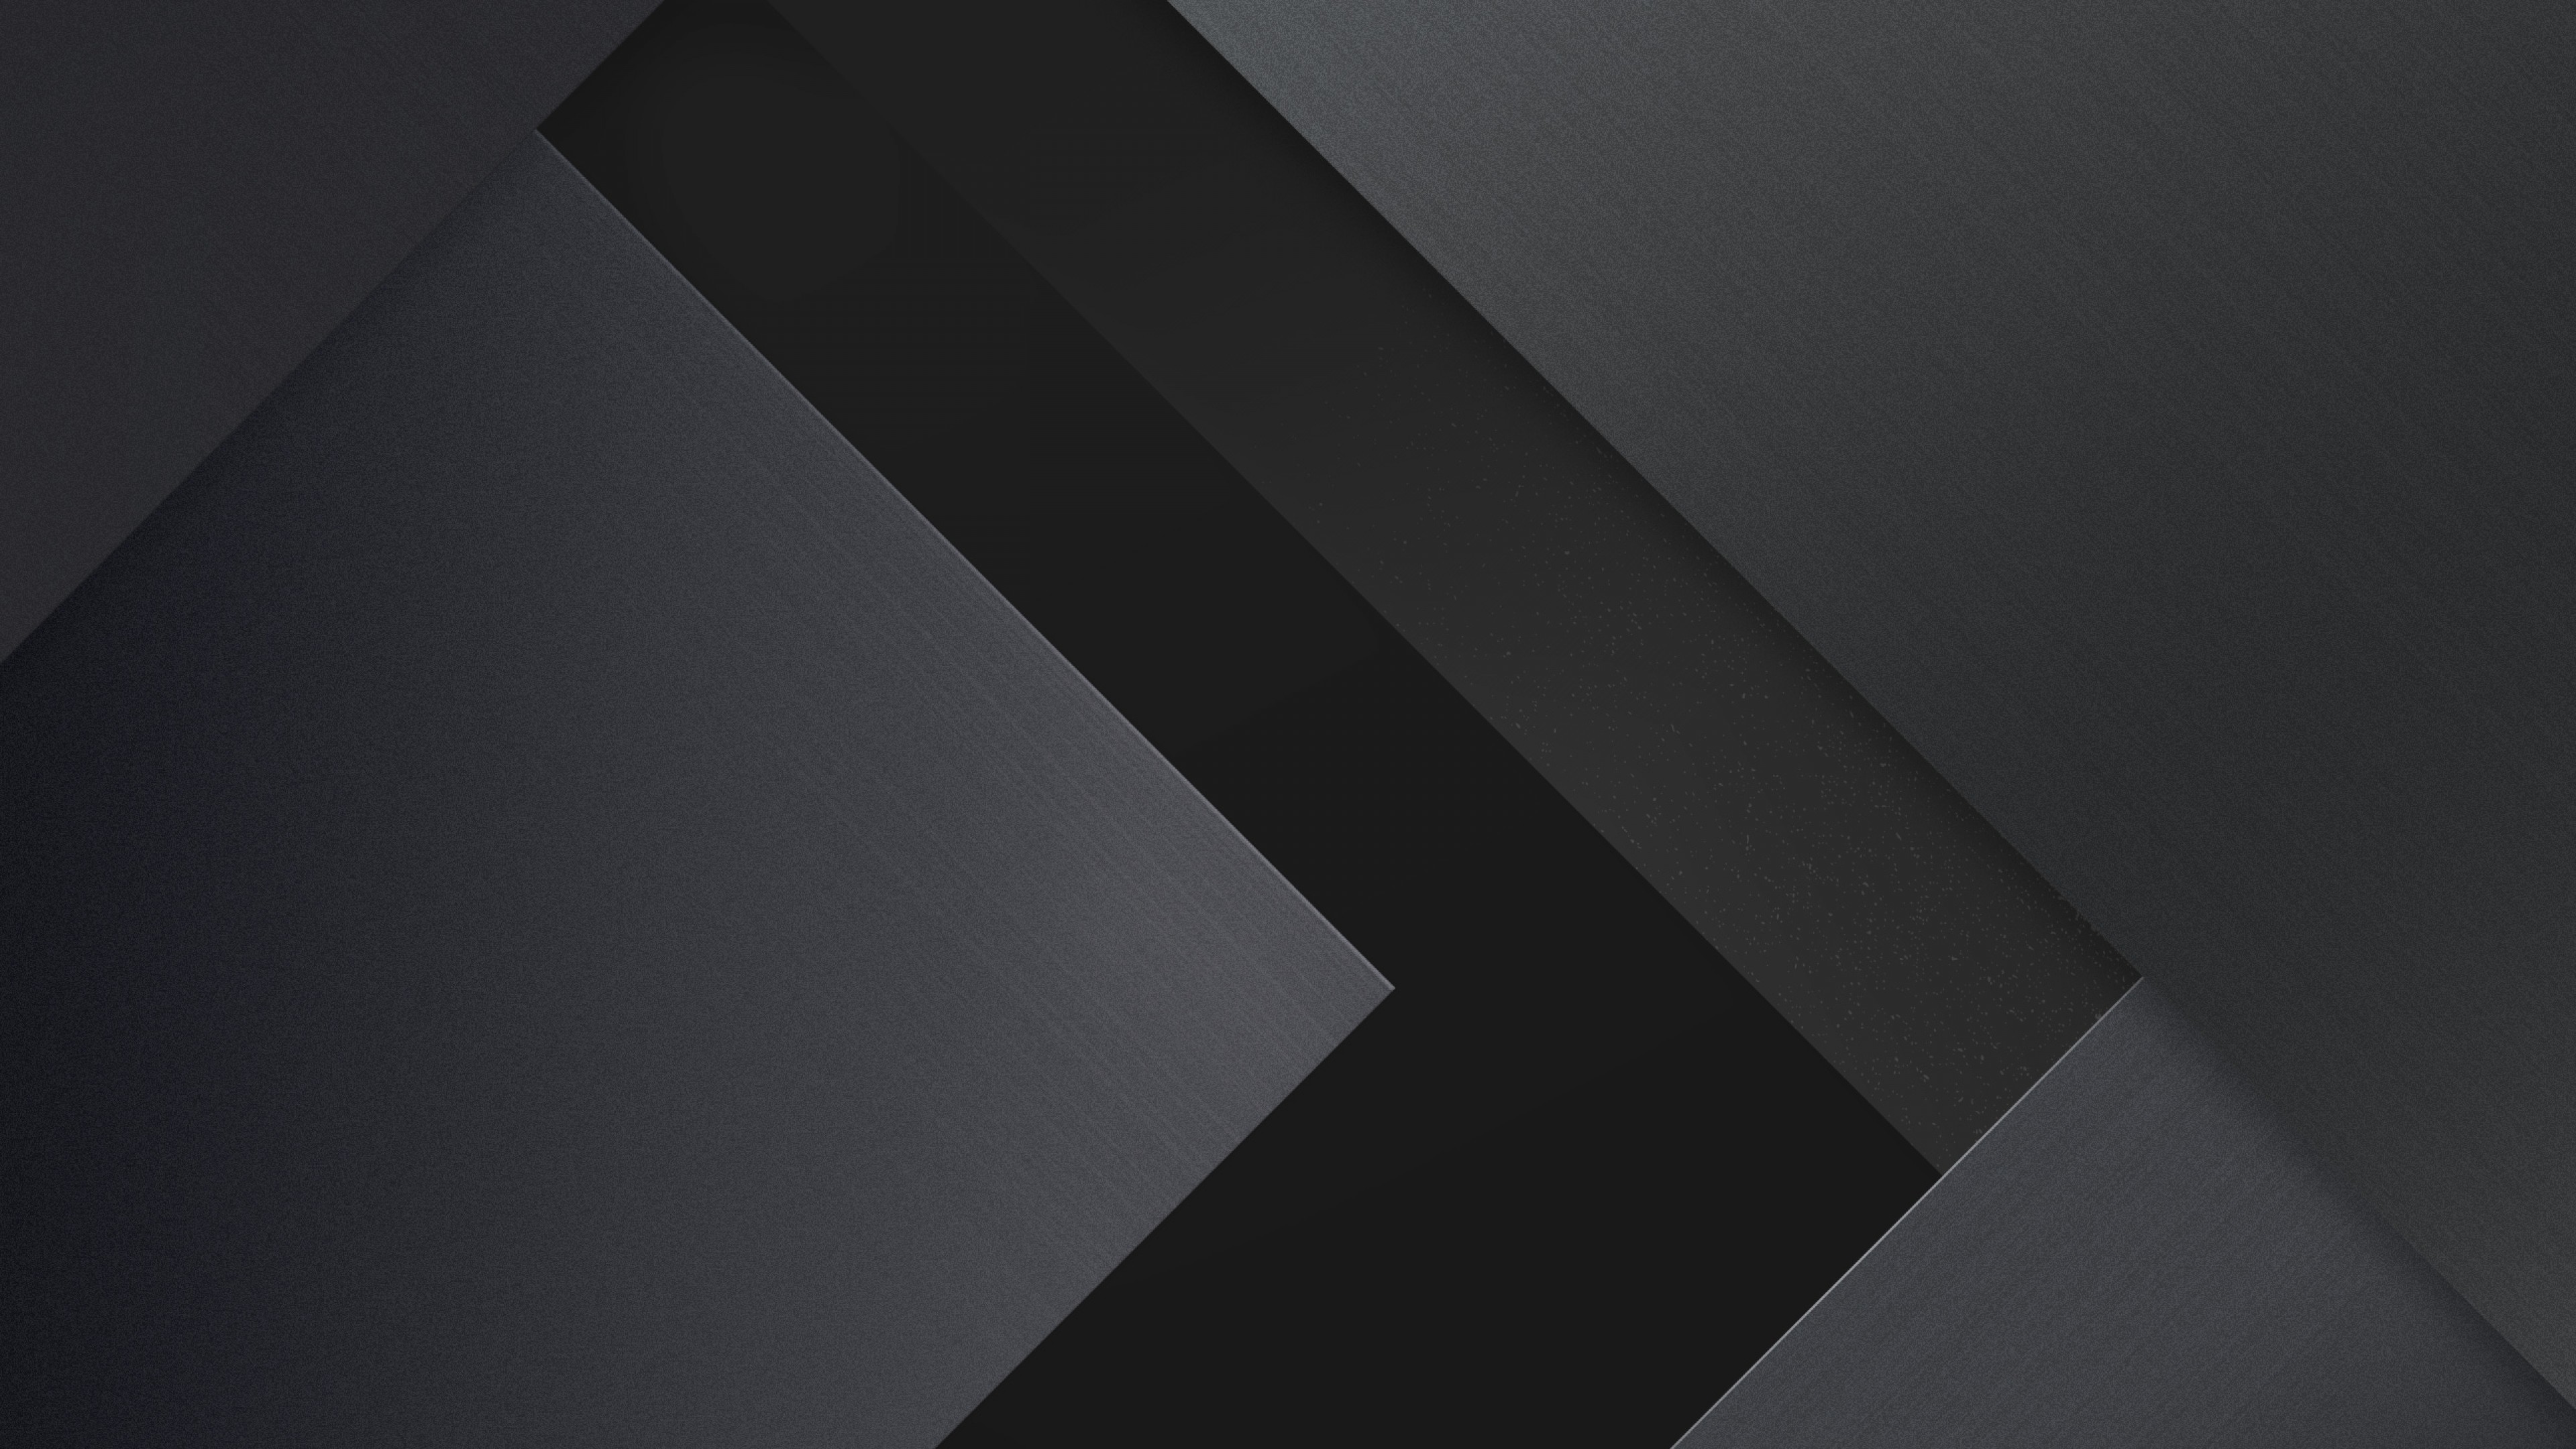 Dark Material Design Wallpaper